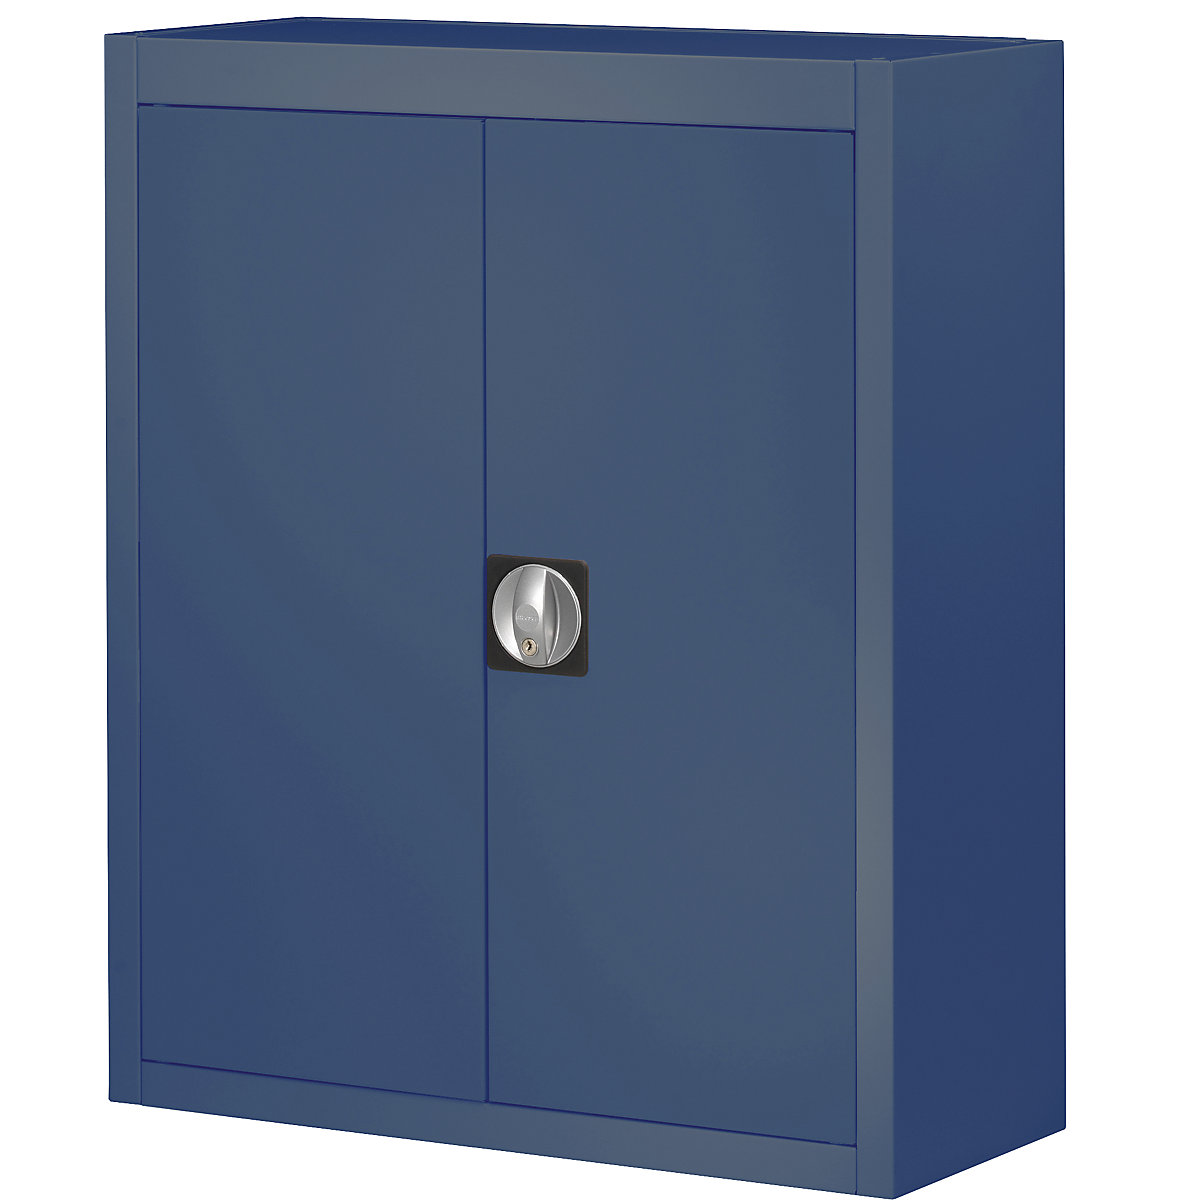 Skladová skříň, bez přepravek s viditelným obsahem – mauser, v x š x h 820 x 680 x 280 mm, jednobarevná, modrá-6